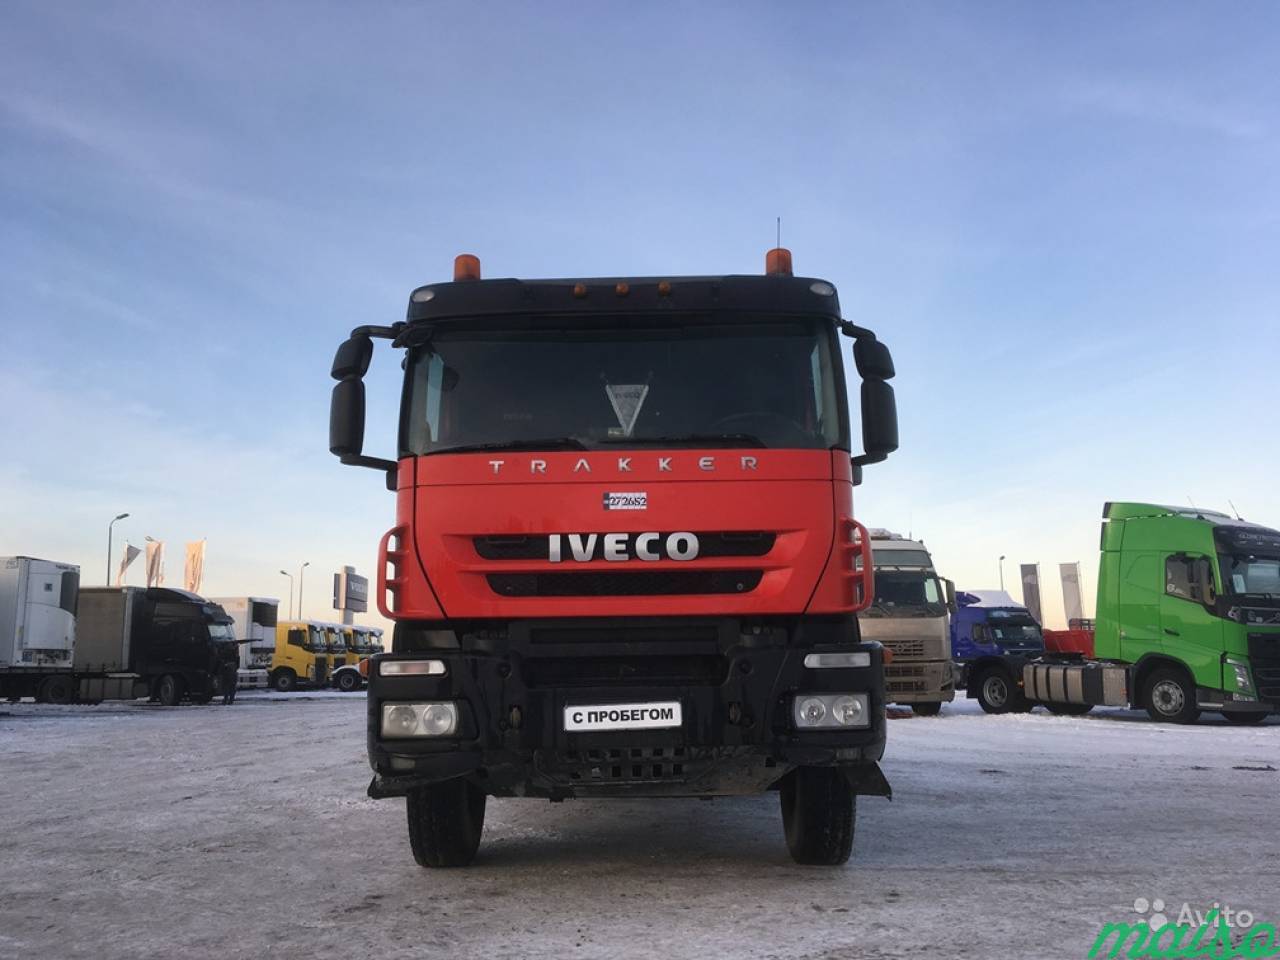 Iveco AMT 633911, Trakker 6x4, ID272652 в Санкт-Петербурге. Фото 2